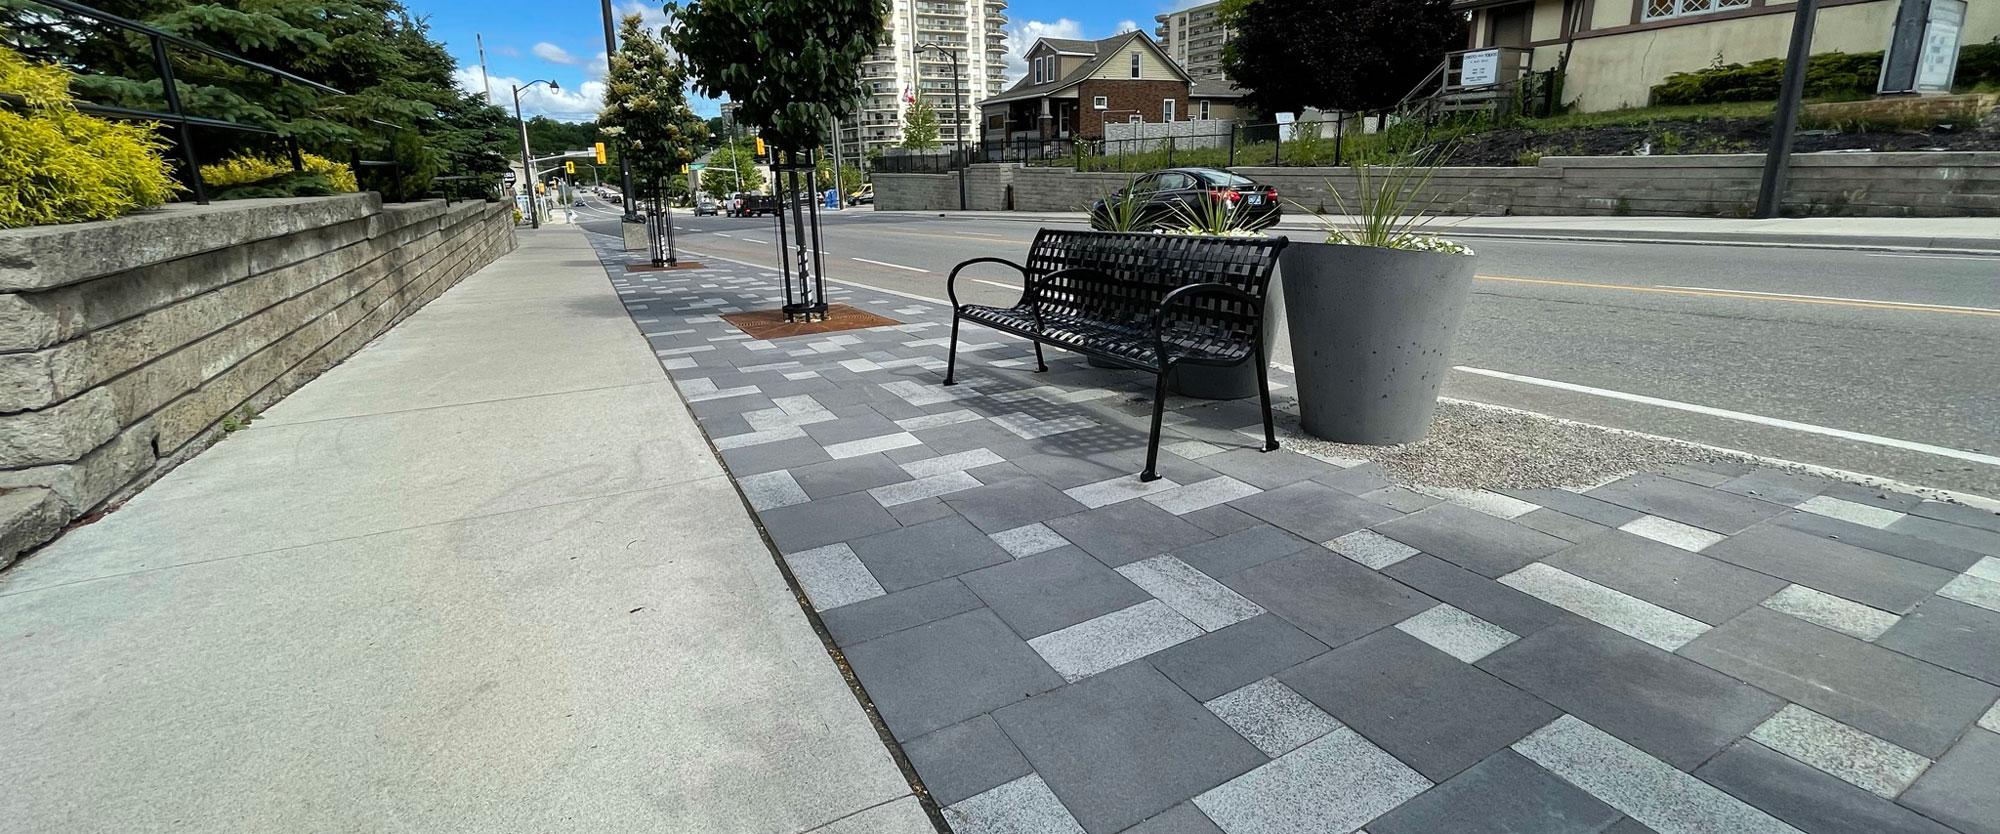 Kitchener walkway tiled